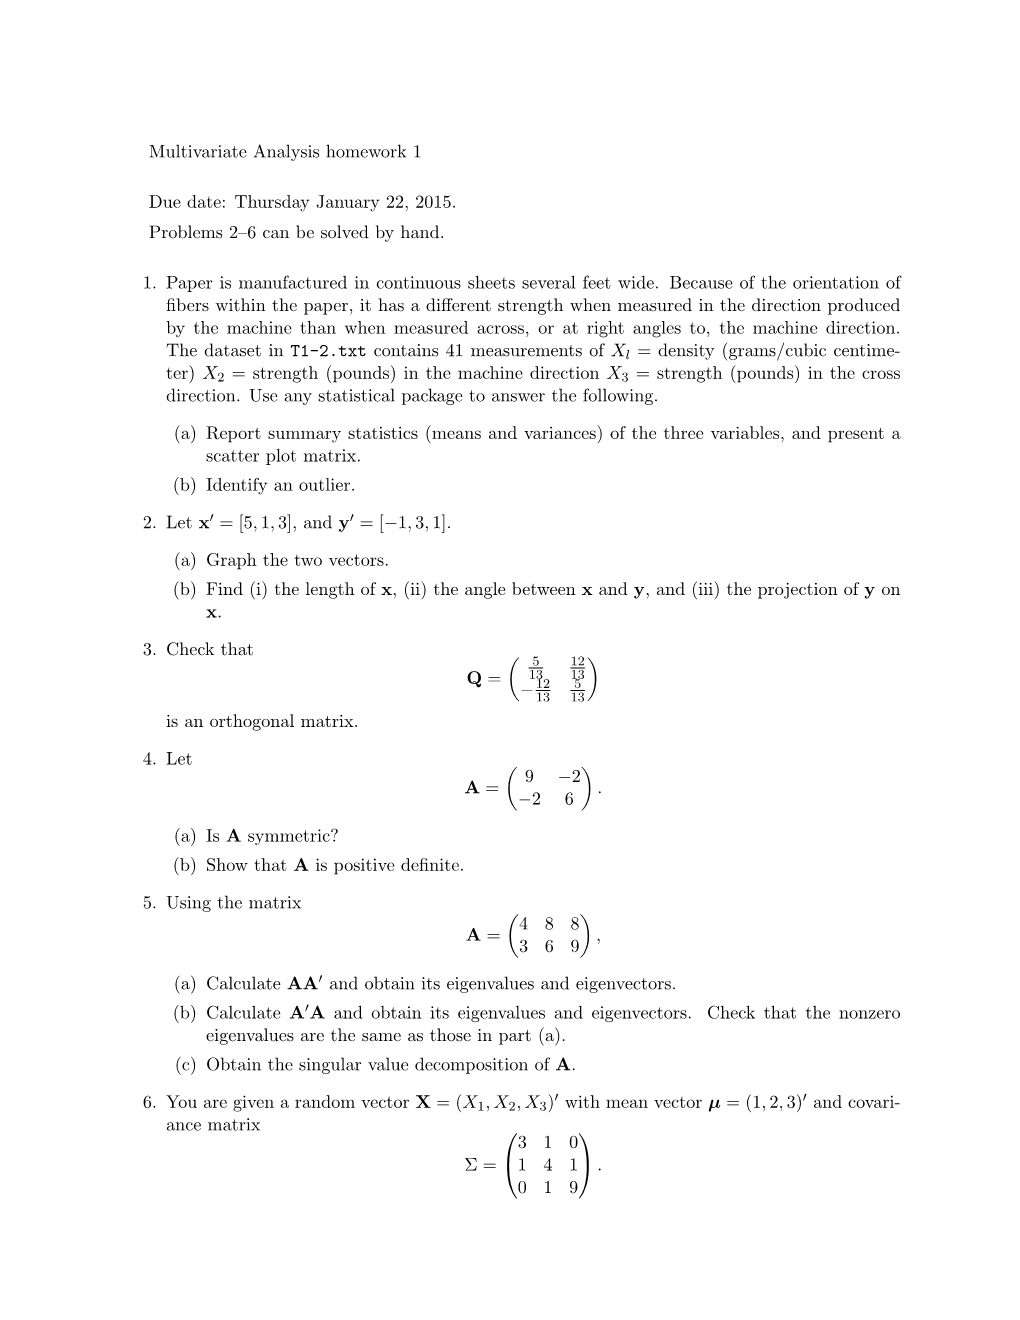 Multivariate Analysis Homework 1 Due Date: Thursday January 22, 2015